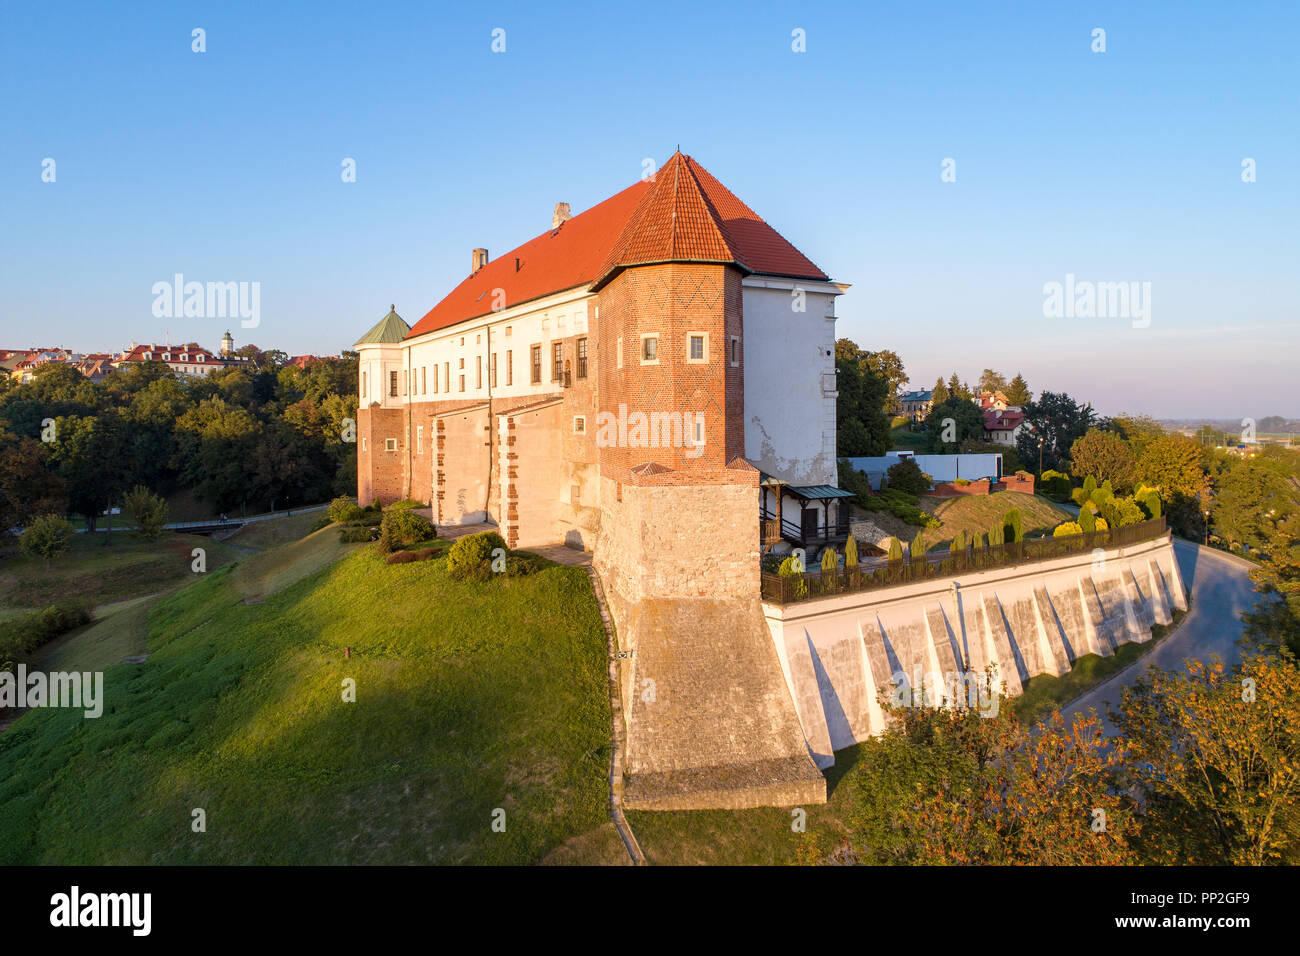 Château gothique médiévale de Sandomierz, Pologne, construit au 14ème siècle. Vue aérienne de la lumière au coucher du soleil. Banque D'Images